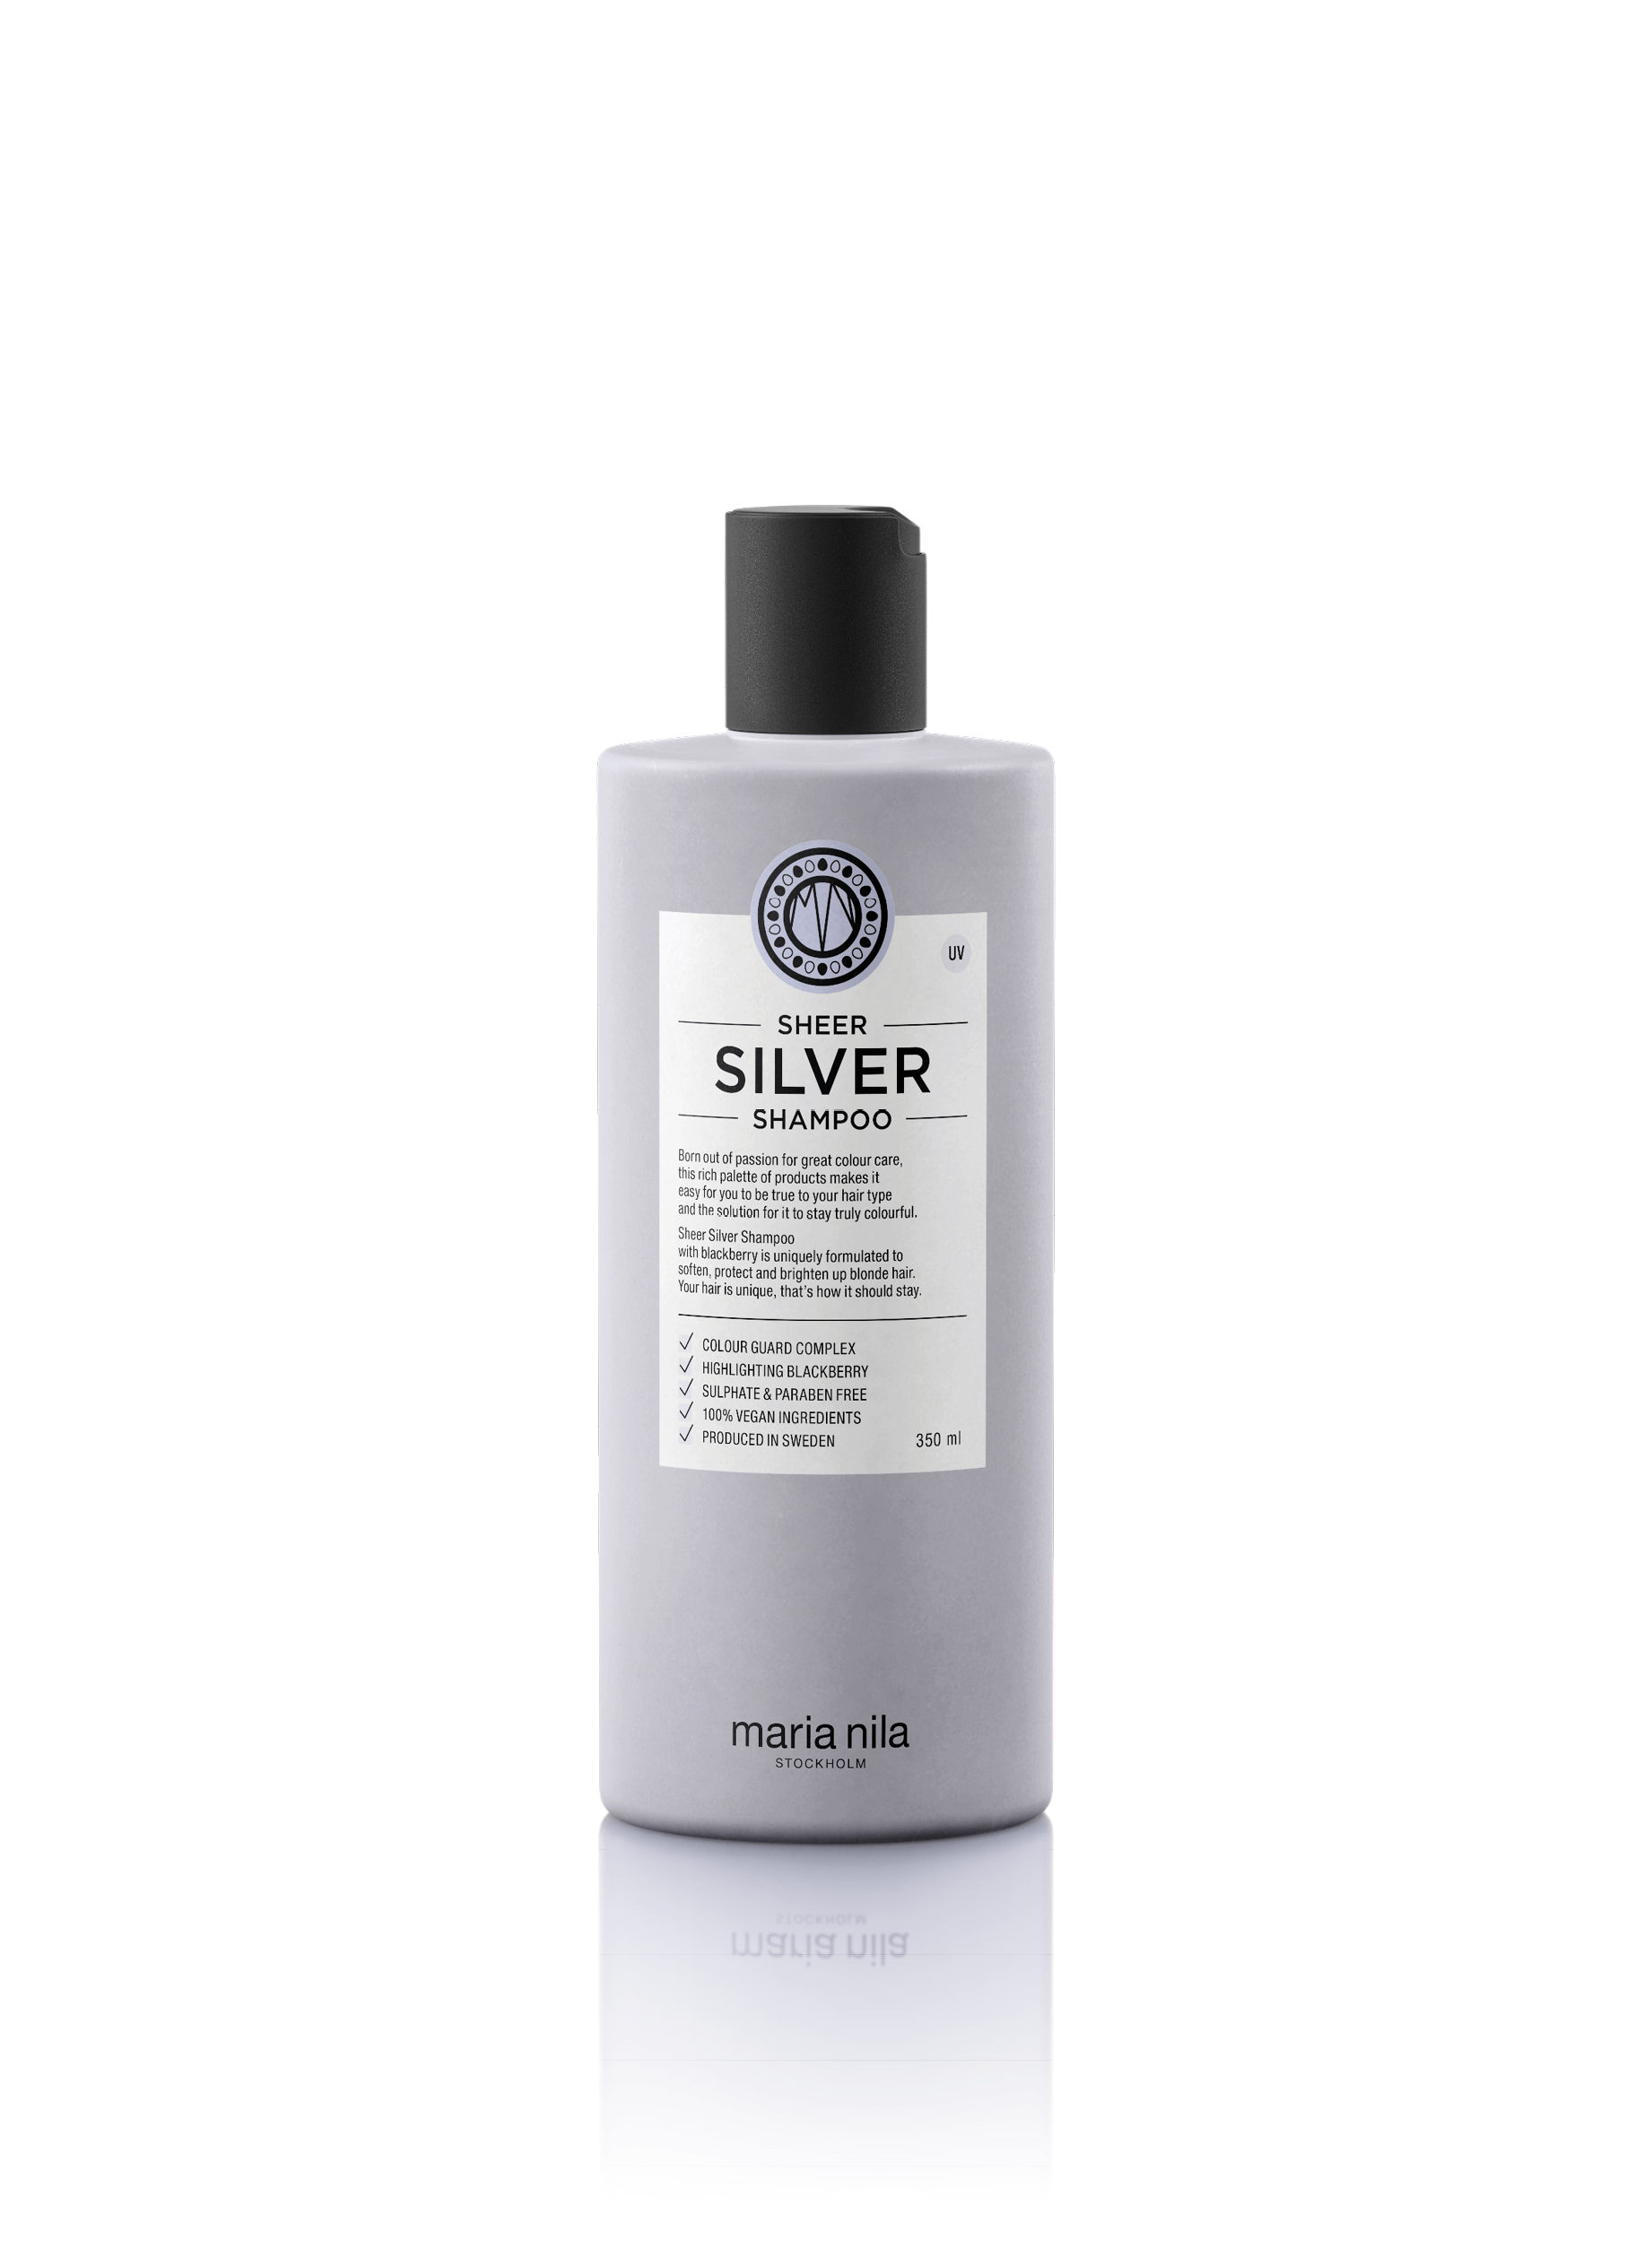 Hvornår jeg bruge en Silver shampoo — Kliim Coiffure